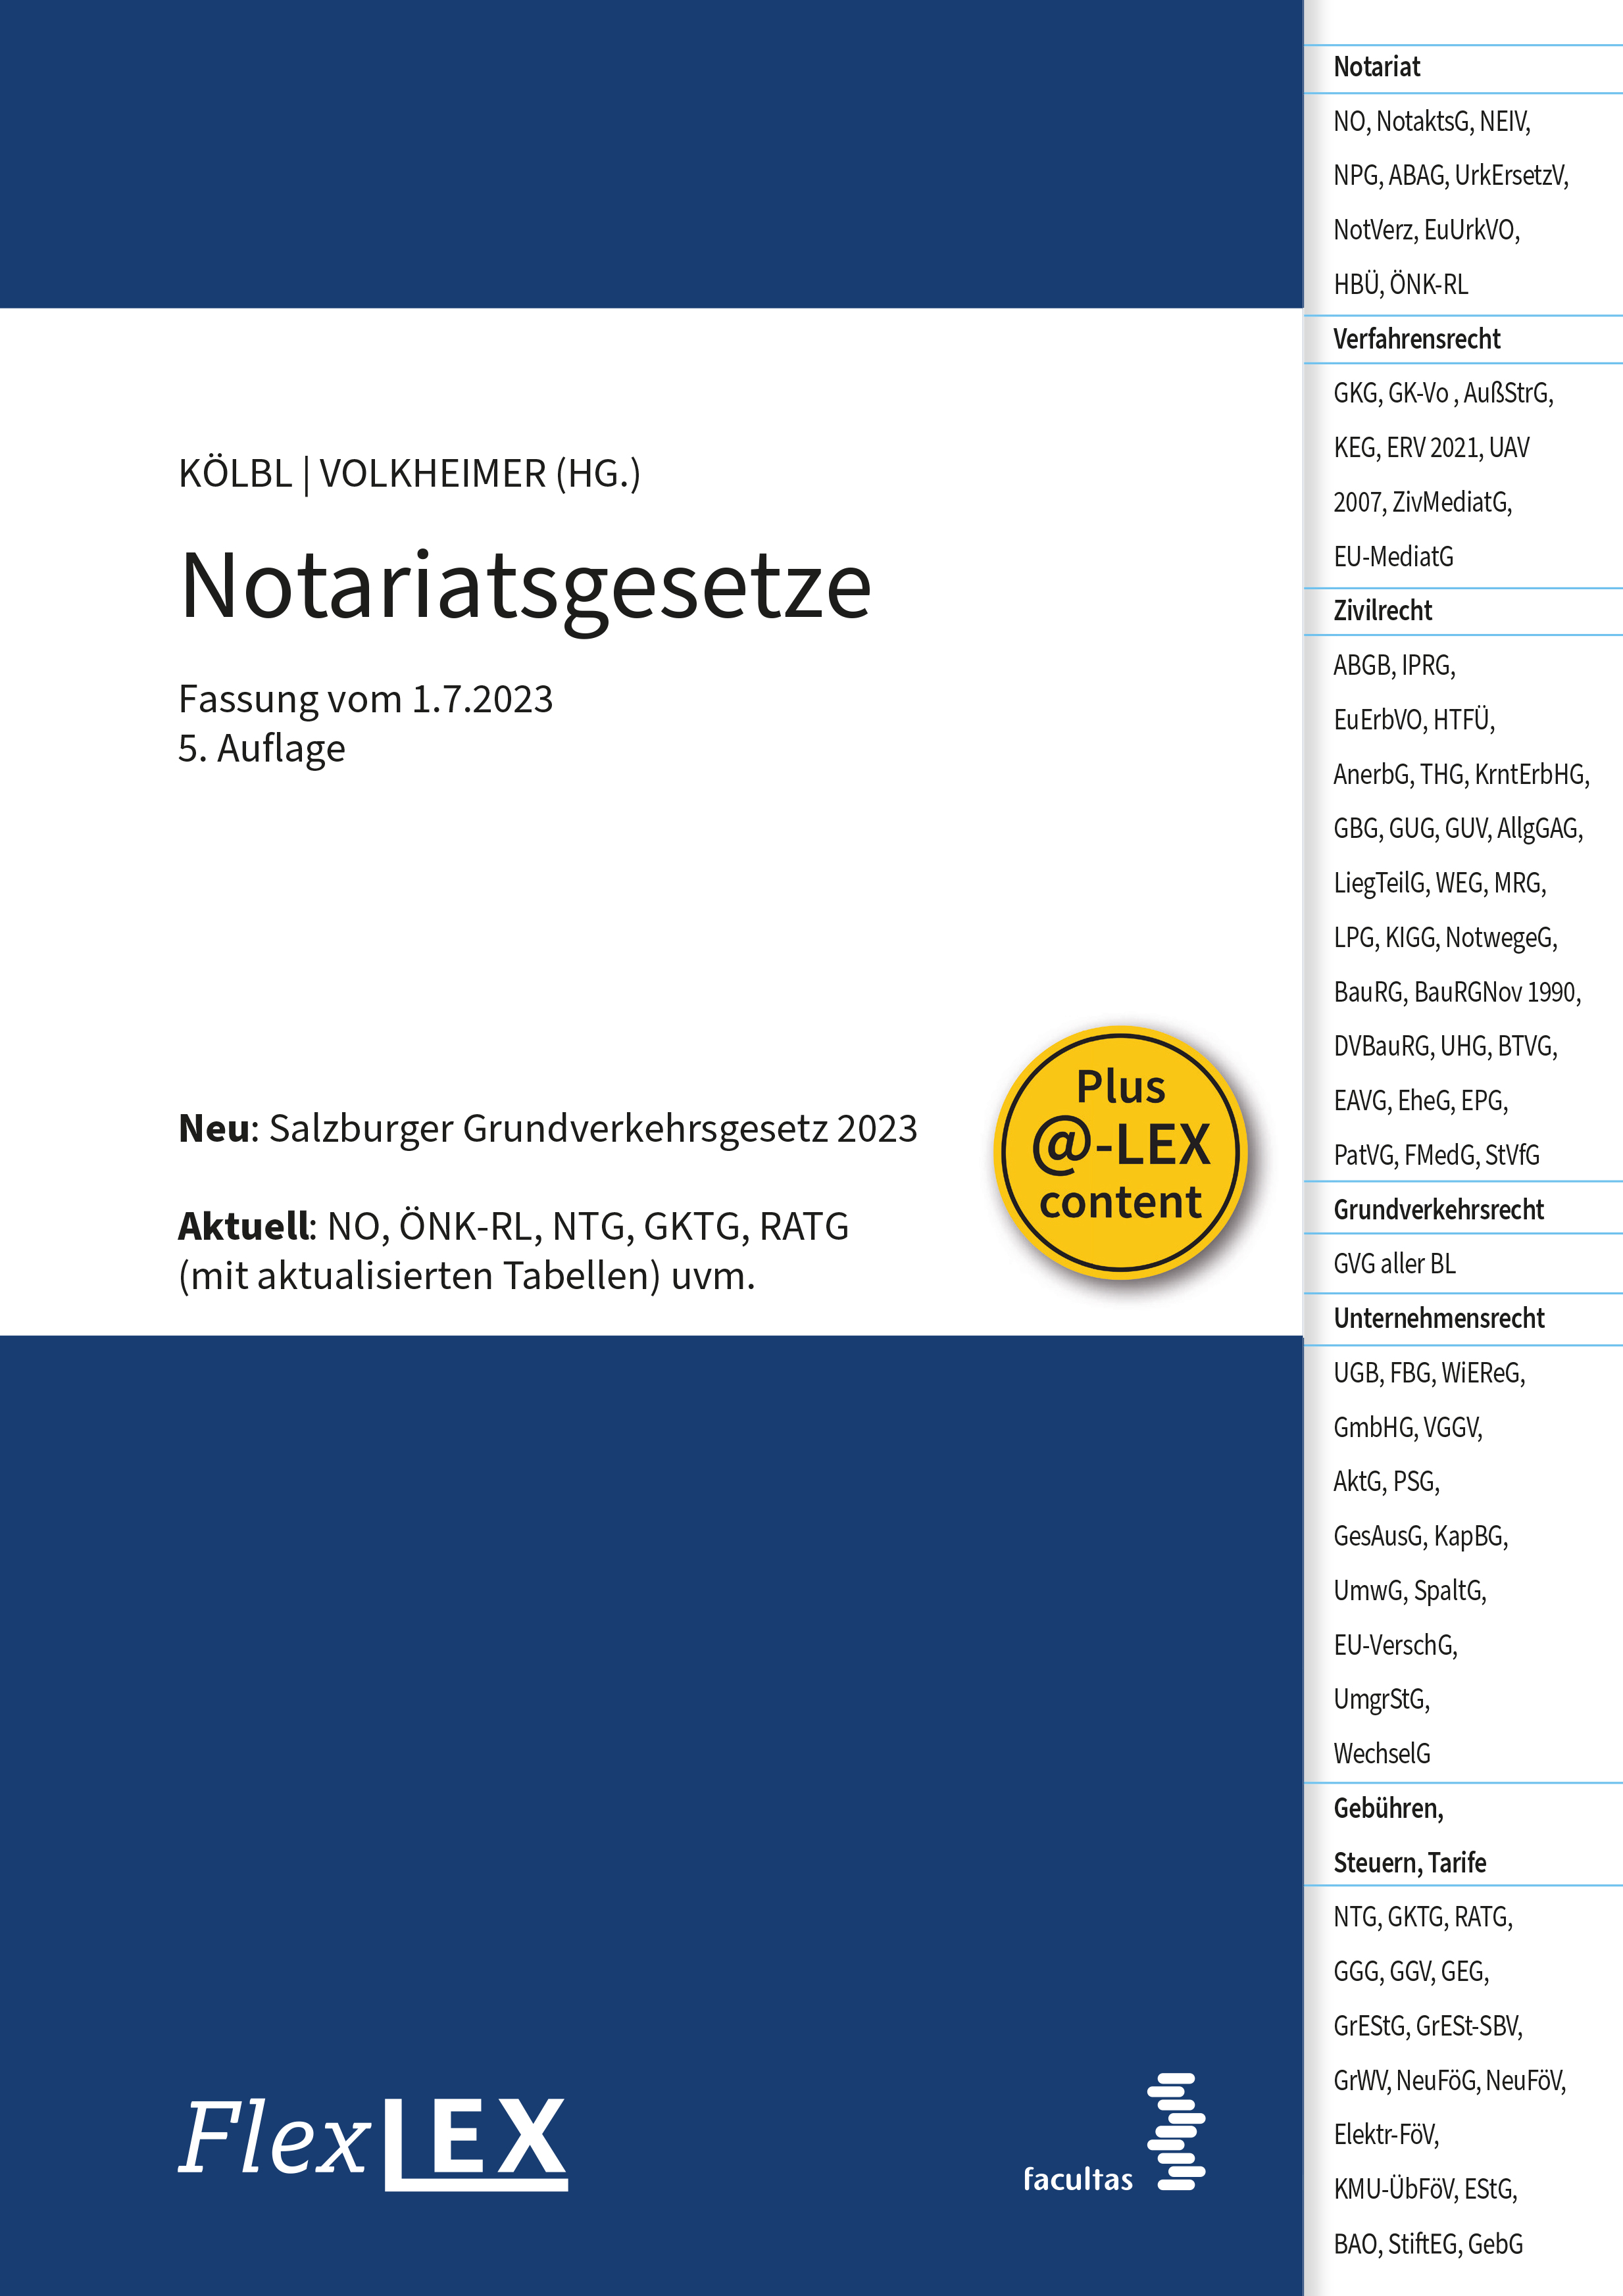 Christoph Kölbl; Manuel Volkheimer / FlexLex Notariatsgesetze - Bild 1 von 1